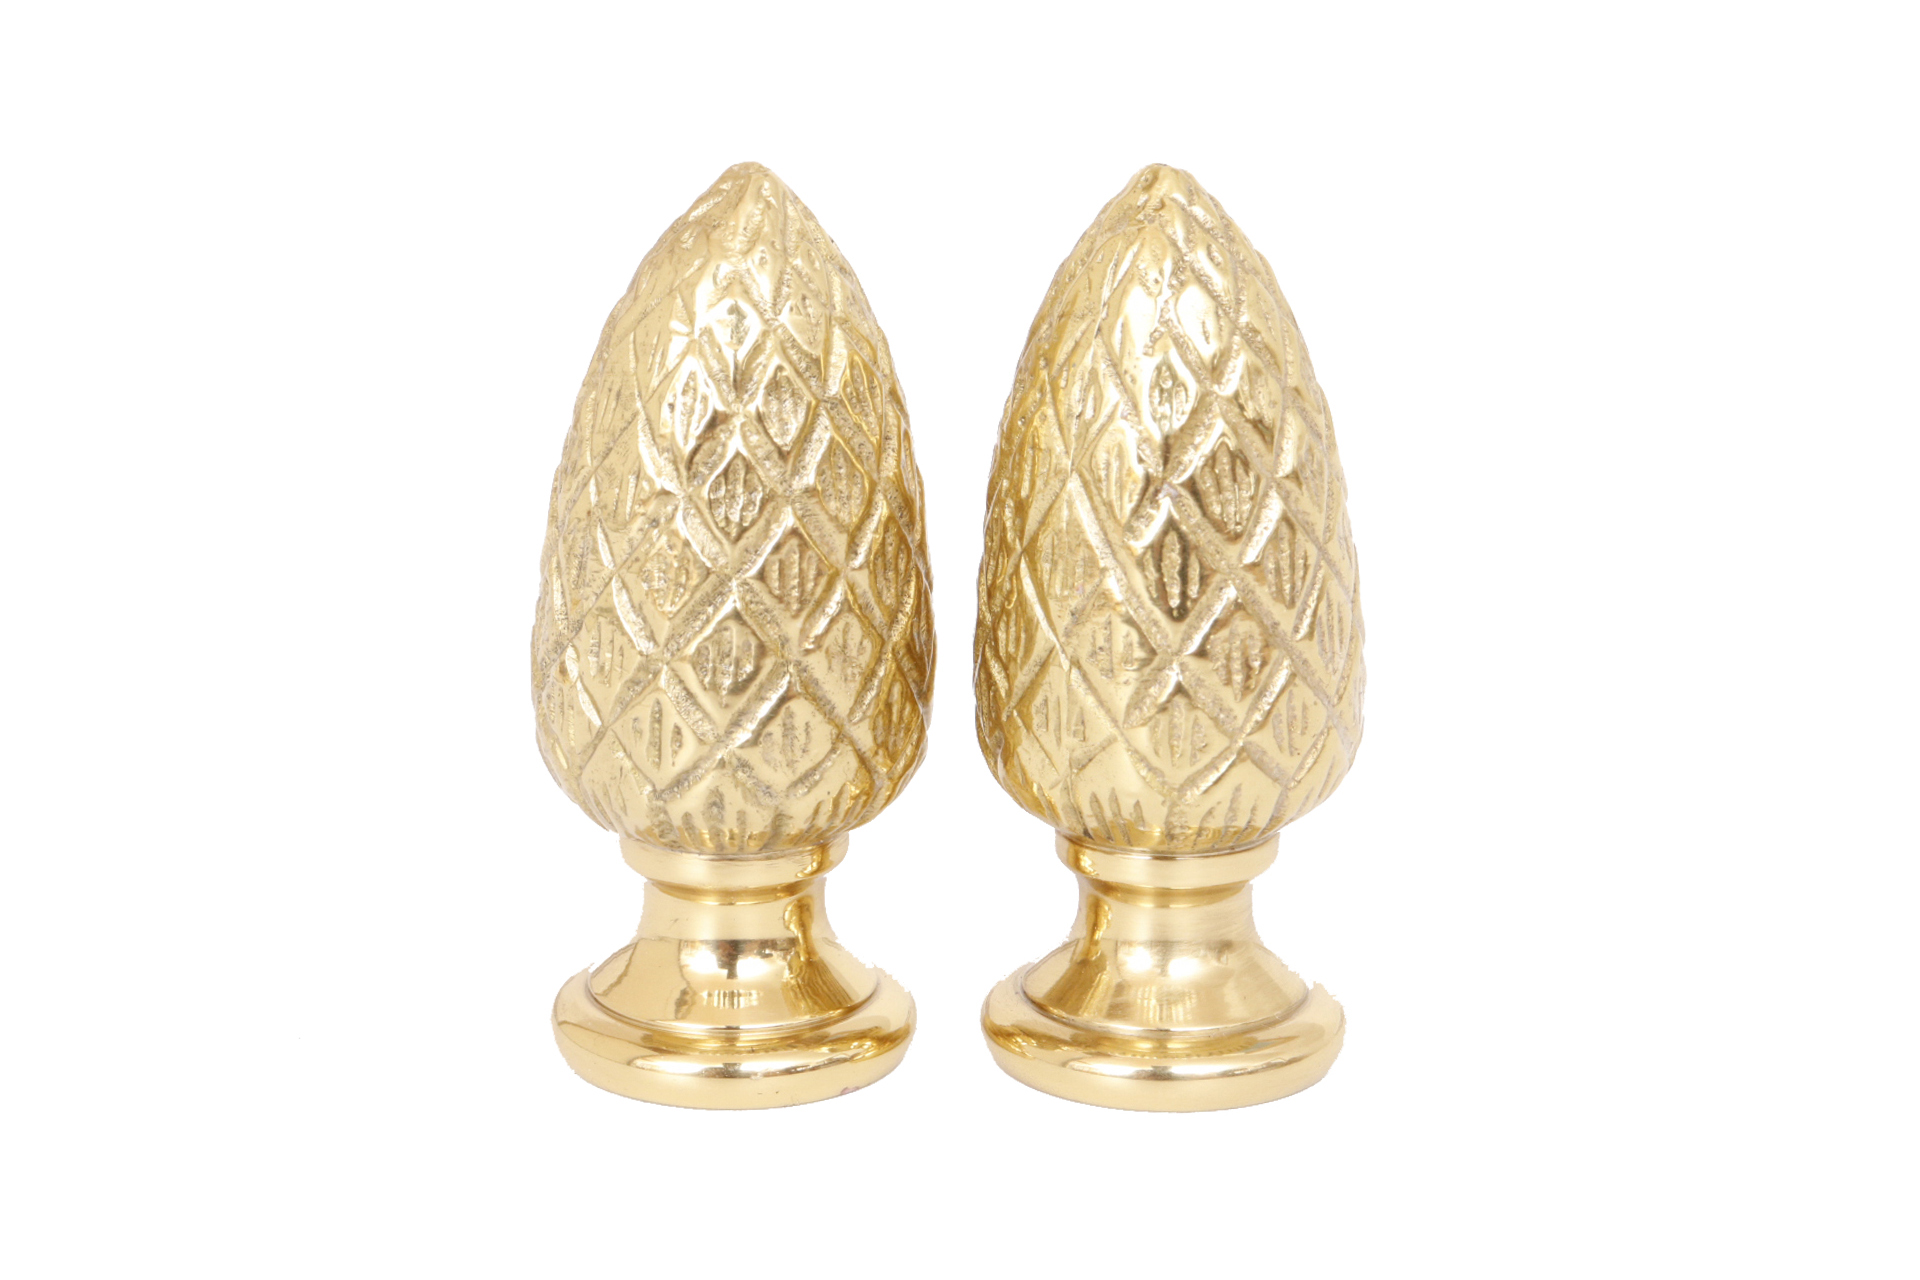 Brass Pine Cone Lamp Finials - a Pair~P77659409